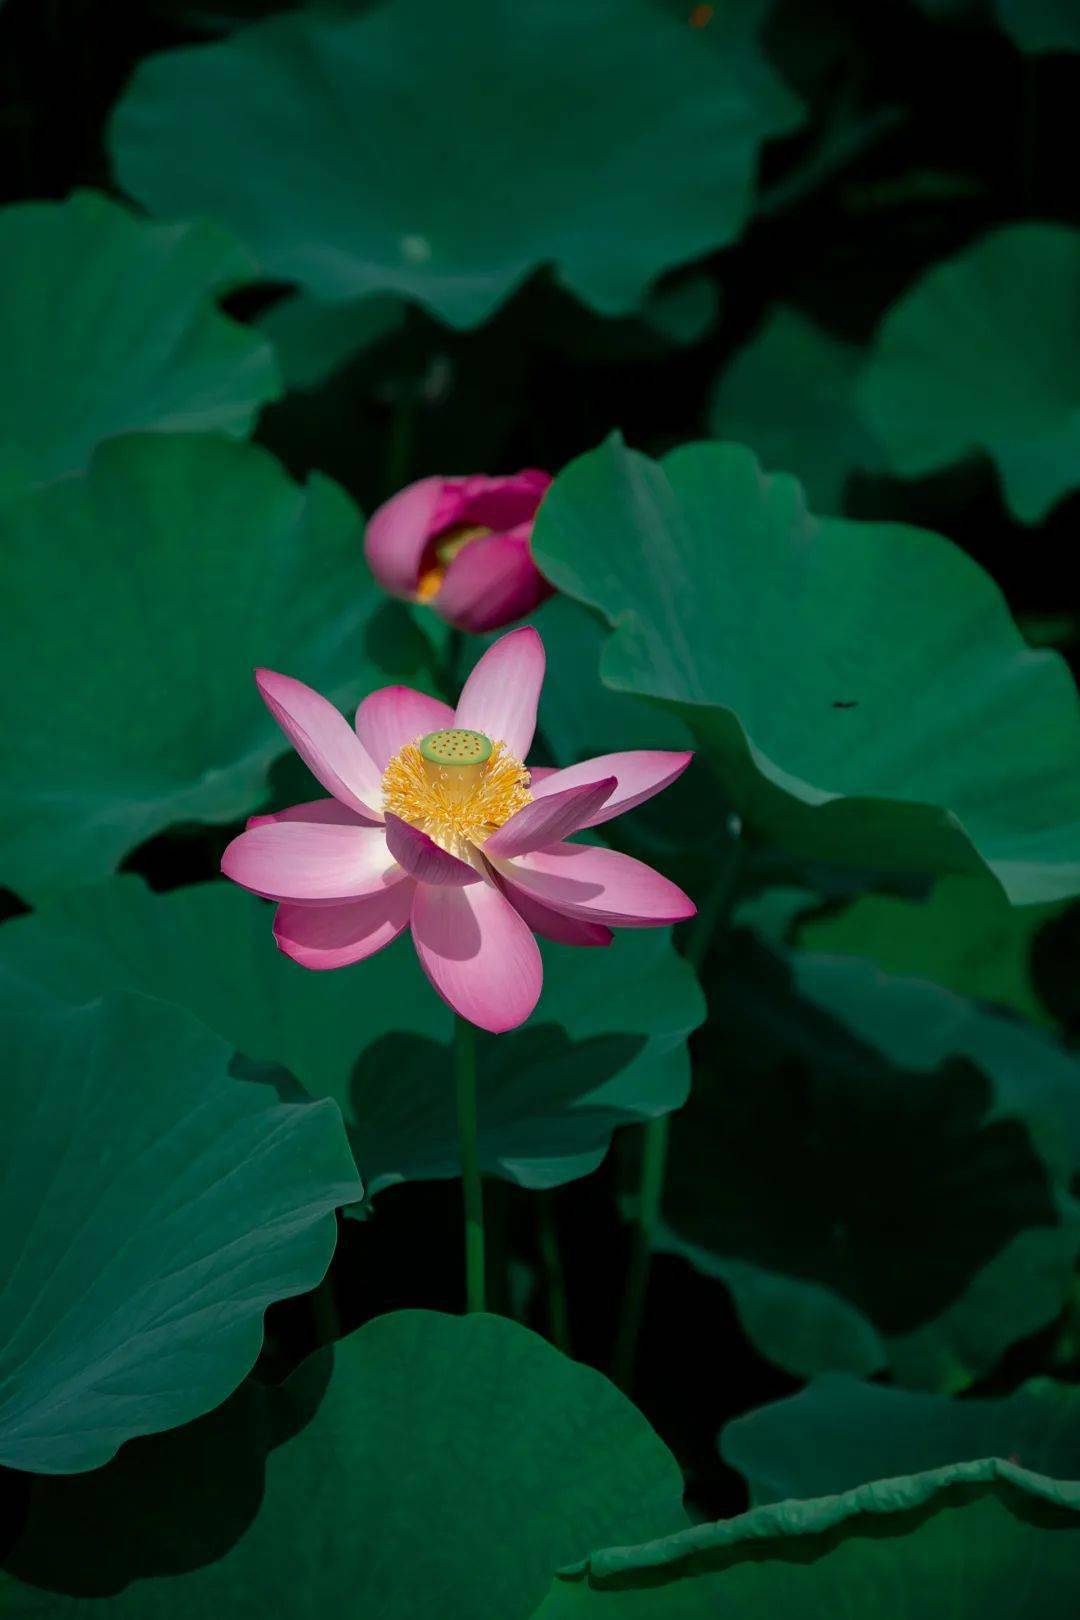 超过 70 张关于“蓝莲花”和“莲花”的免费图片 - Pixabay